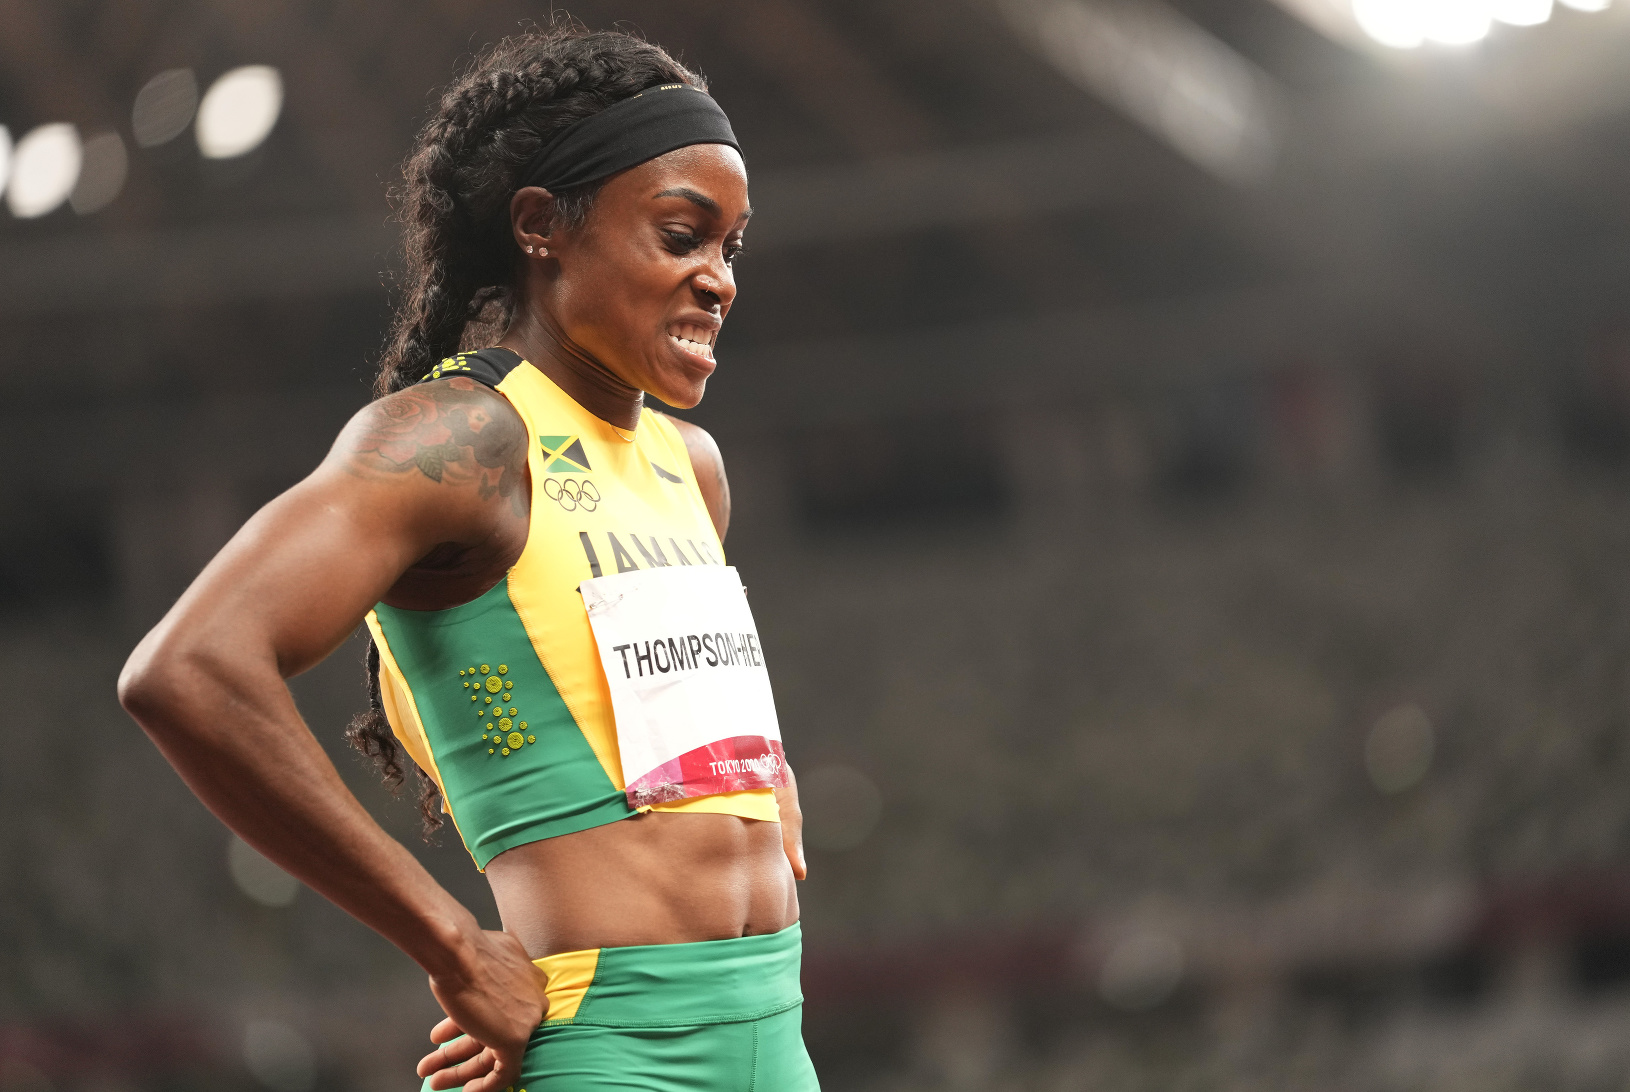 Jamajská šprintérka Elaine Thompsonová-Herahová